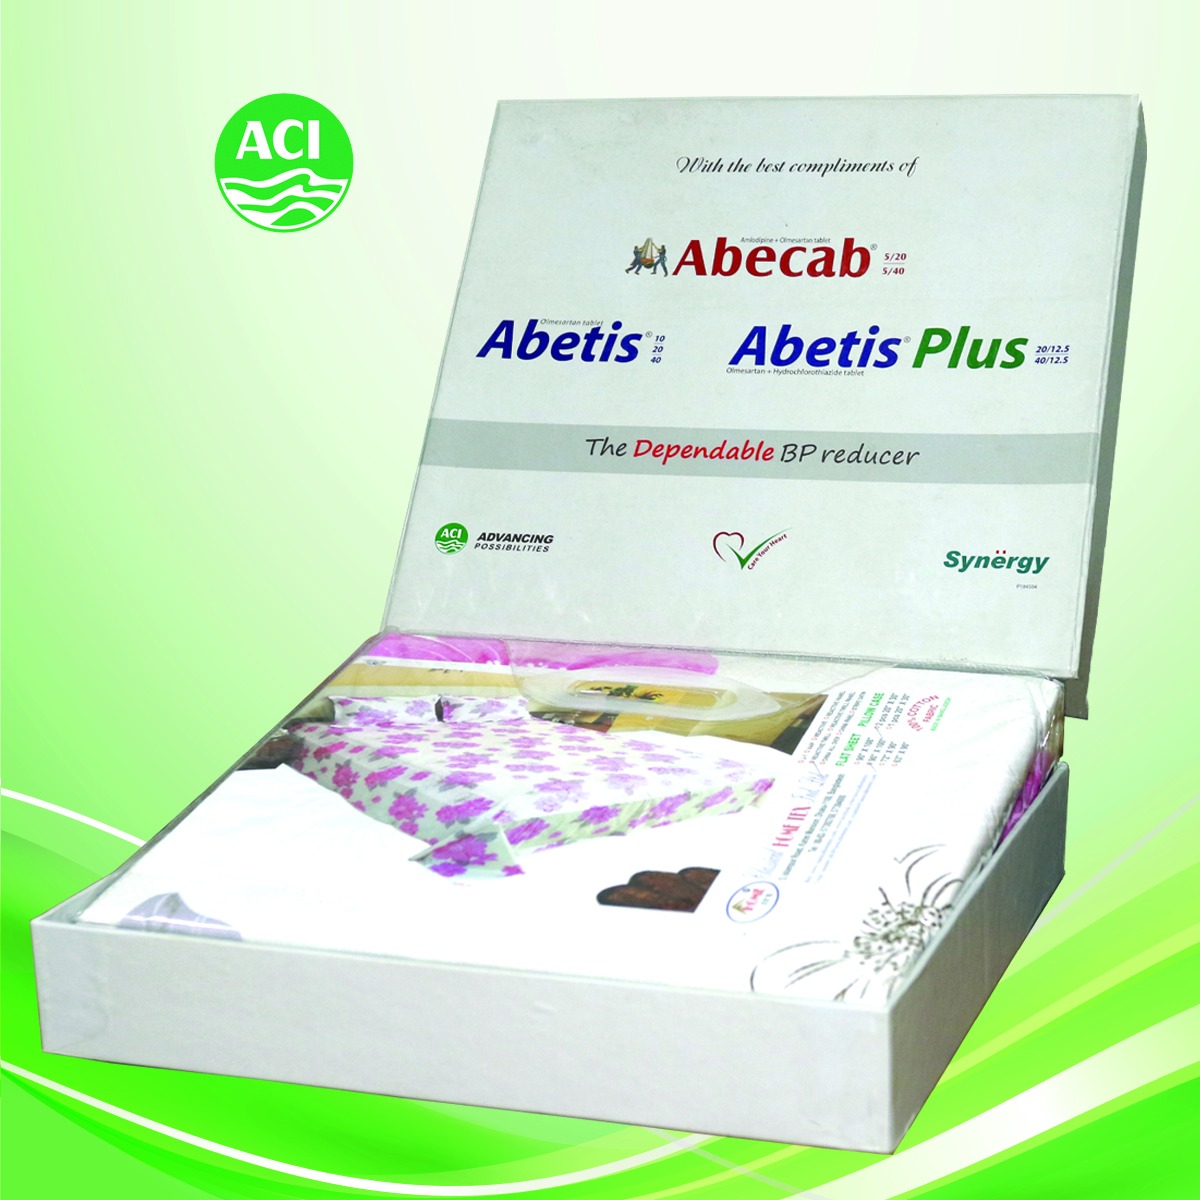 Abecab ACI (1)